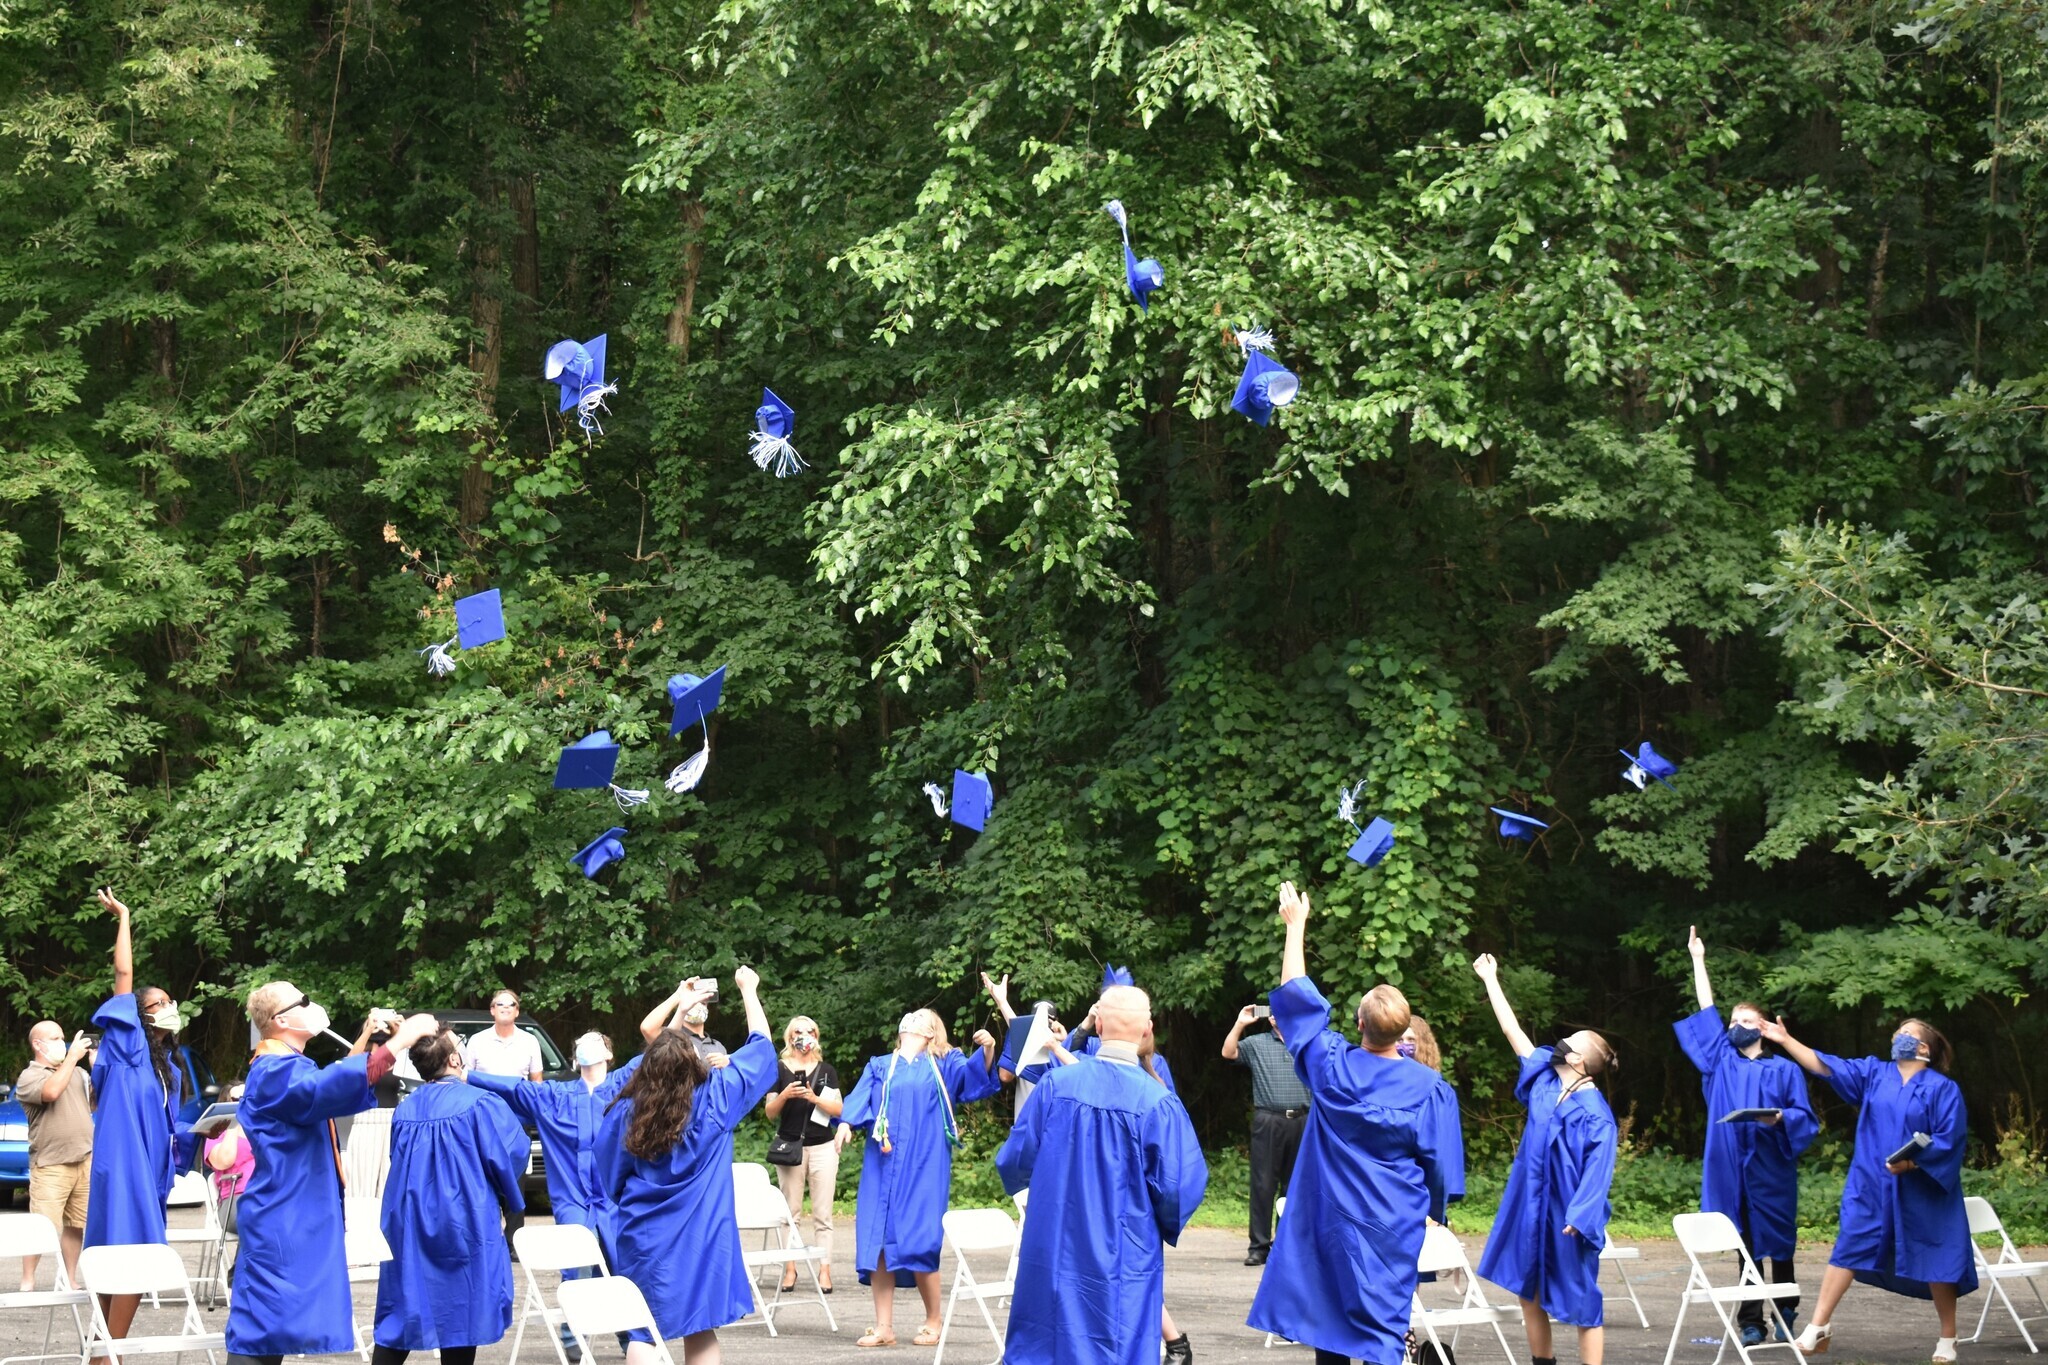 2020 graduates tossing their caps